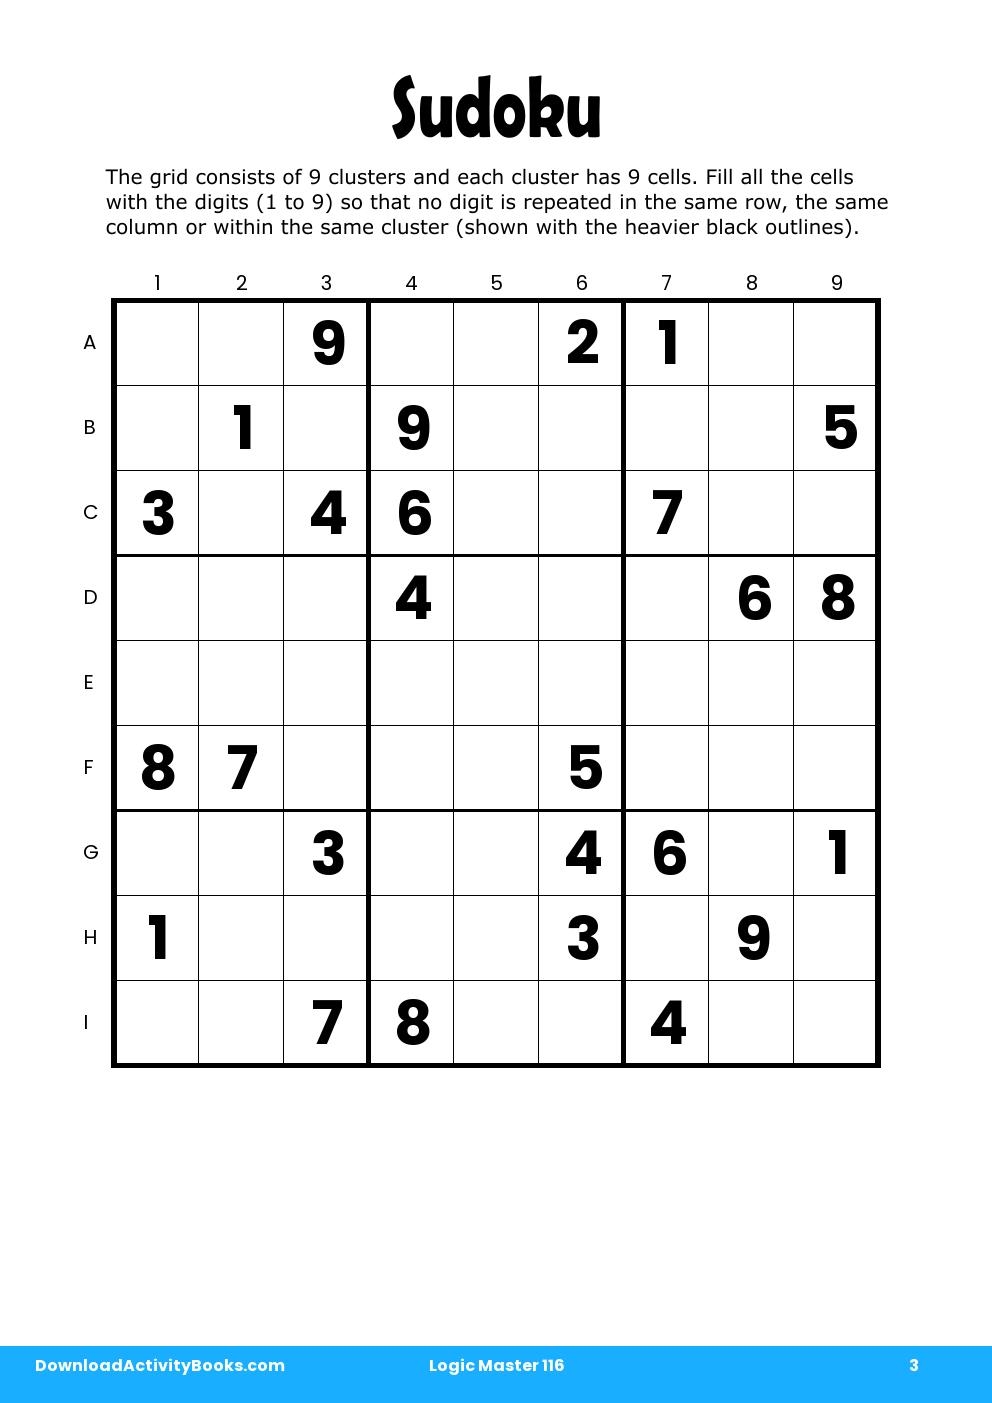 Sudoku in Logic Master 116